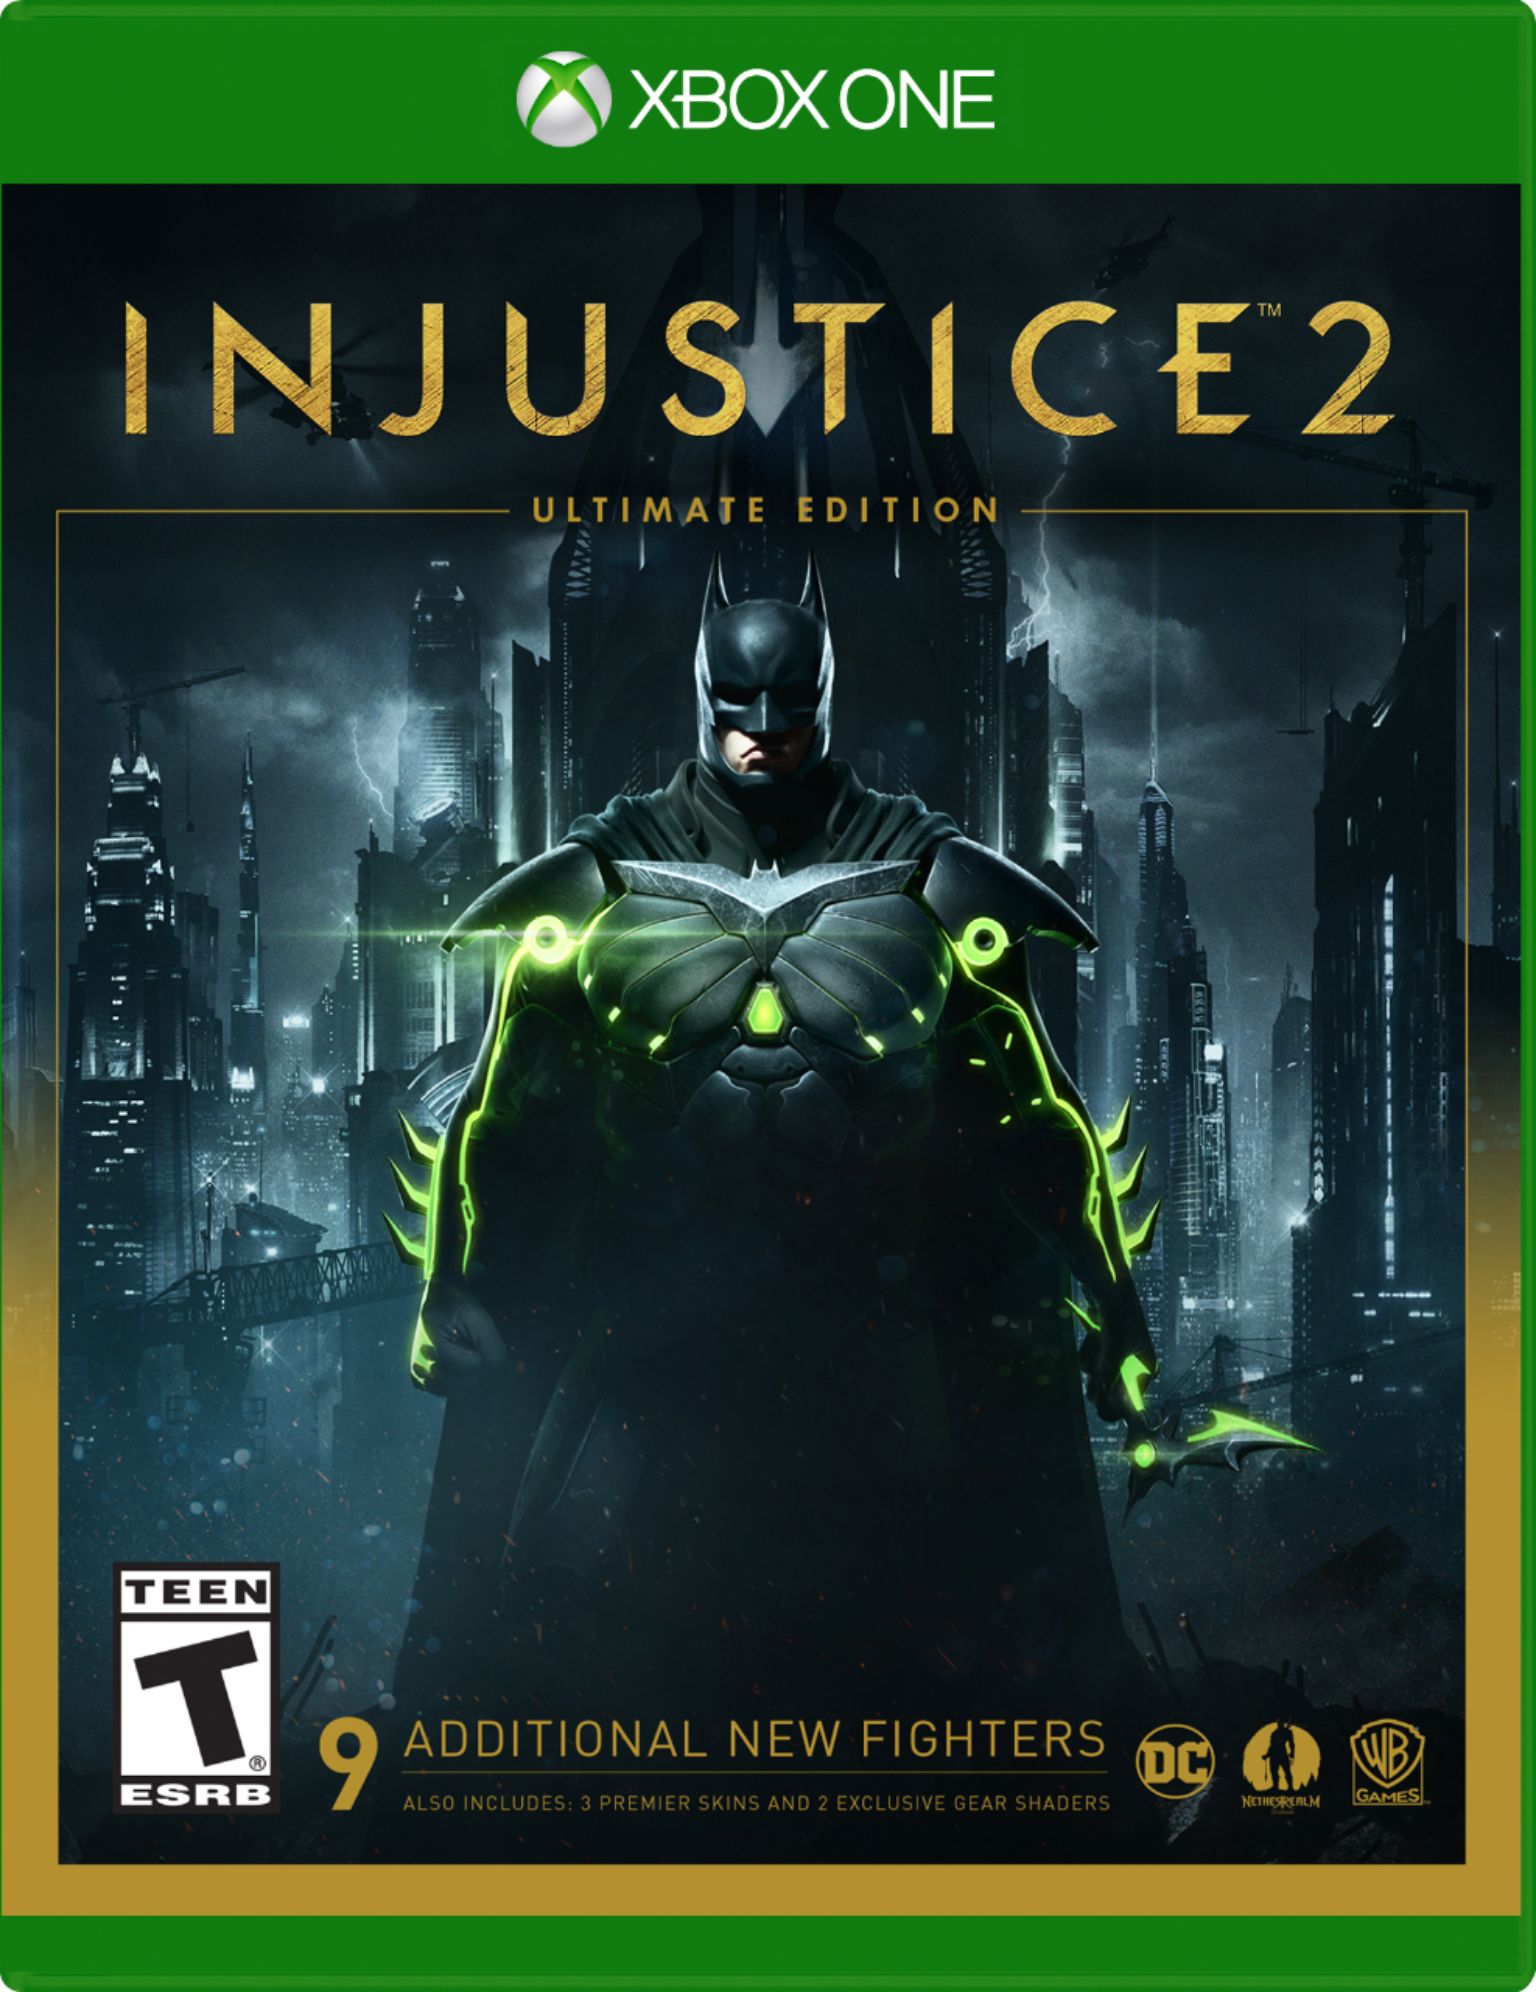 Jogo Injustice 2 Xbox One Warner Bros em Promoção é no Bondfaro